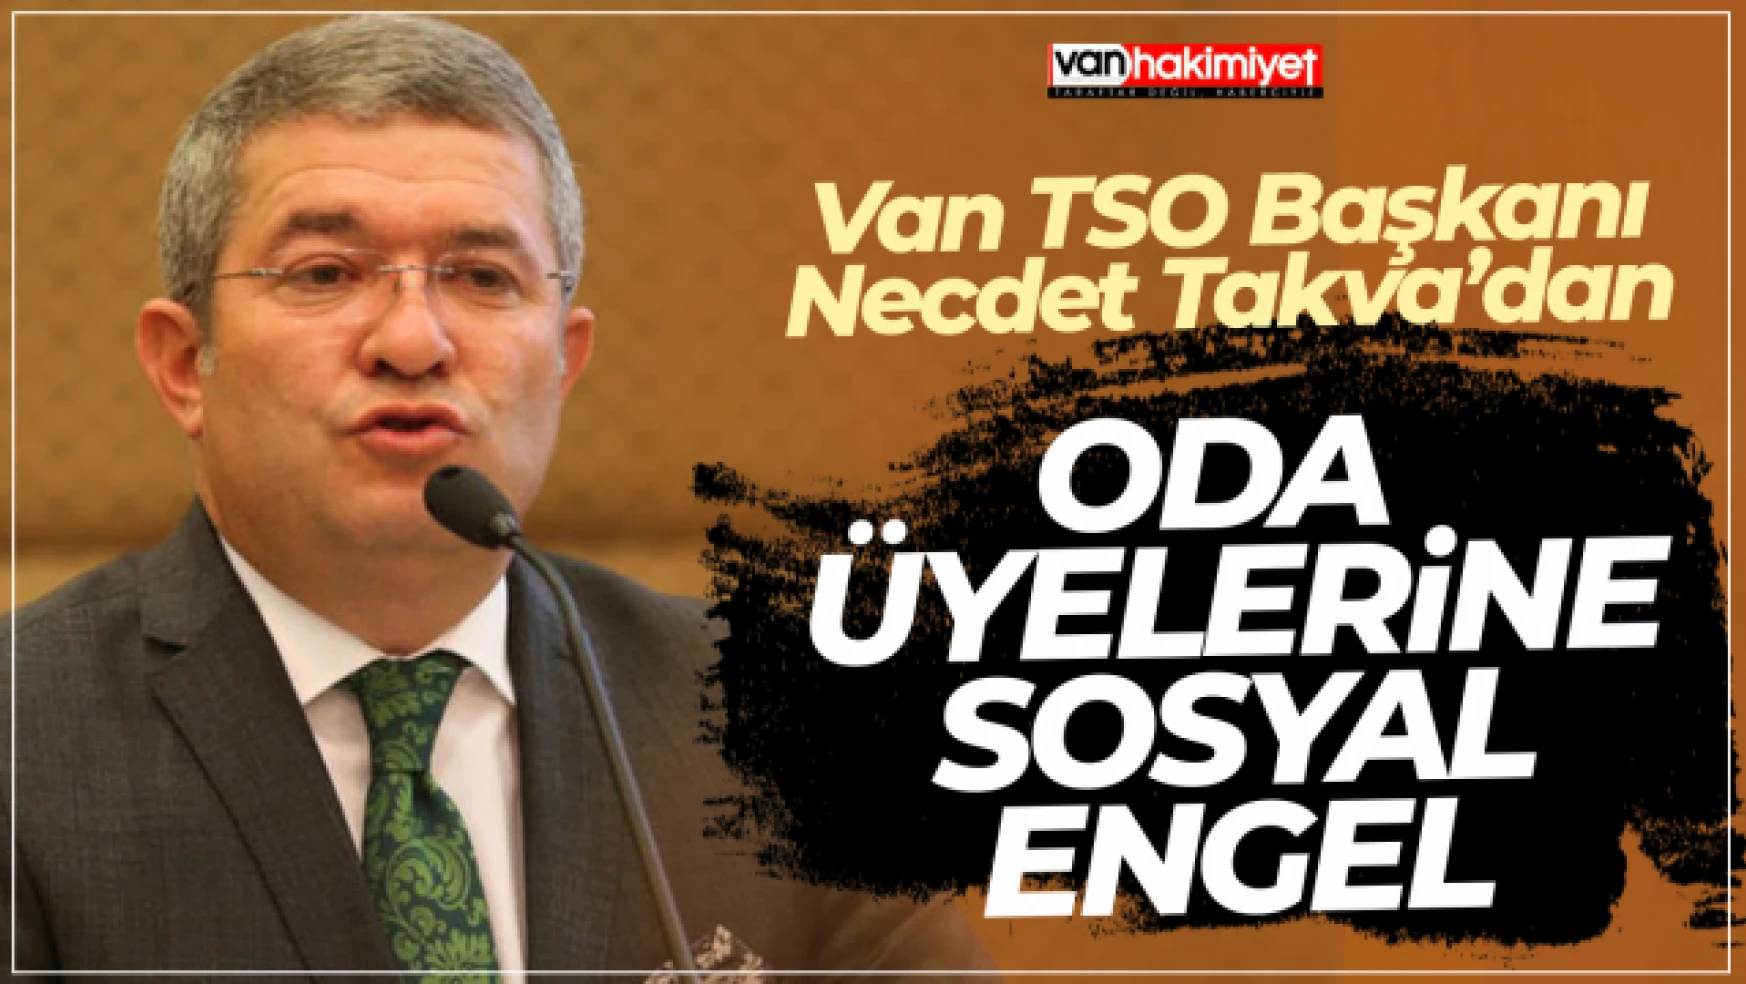 Van TSO Başkanı Necdet Takva'dan oda üyelerine sosyal engel!